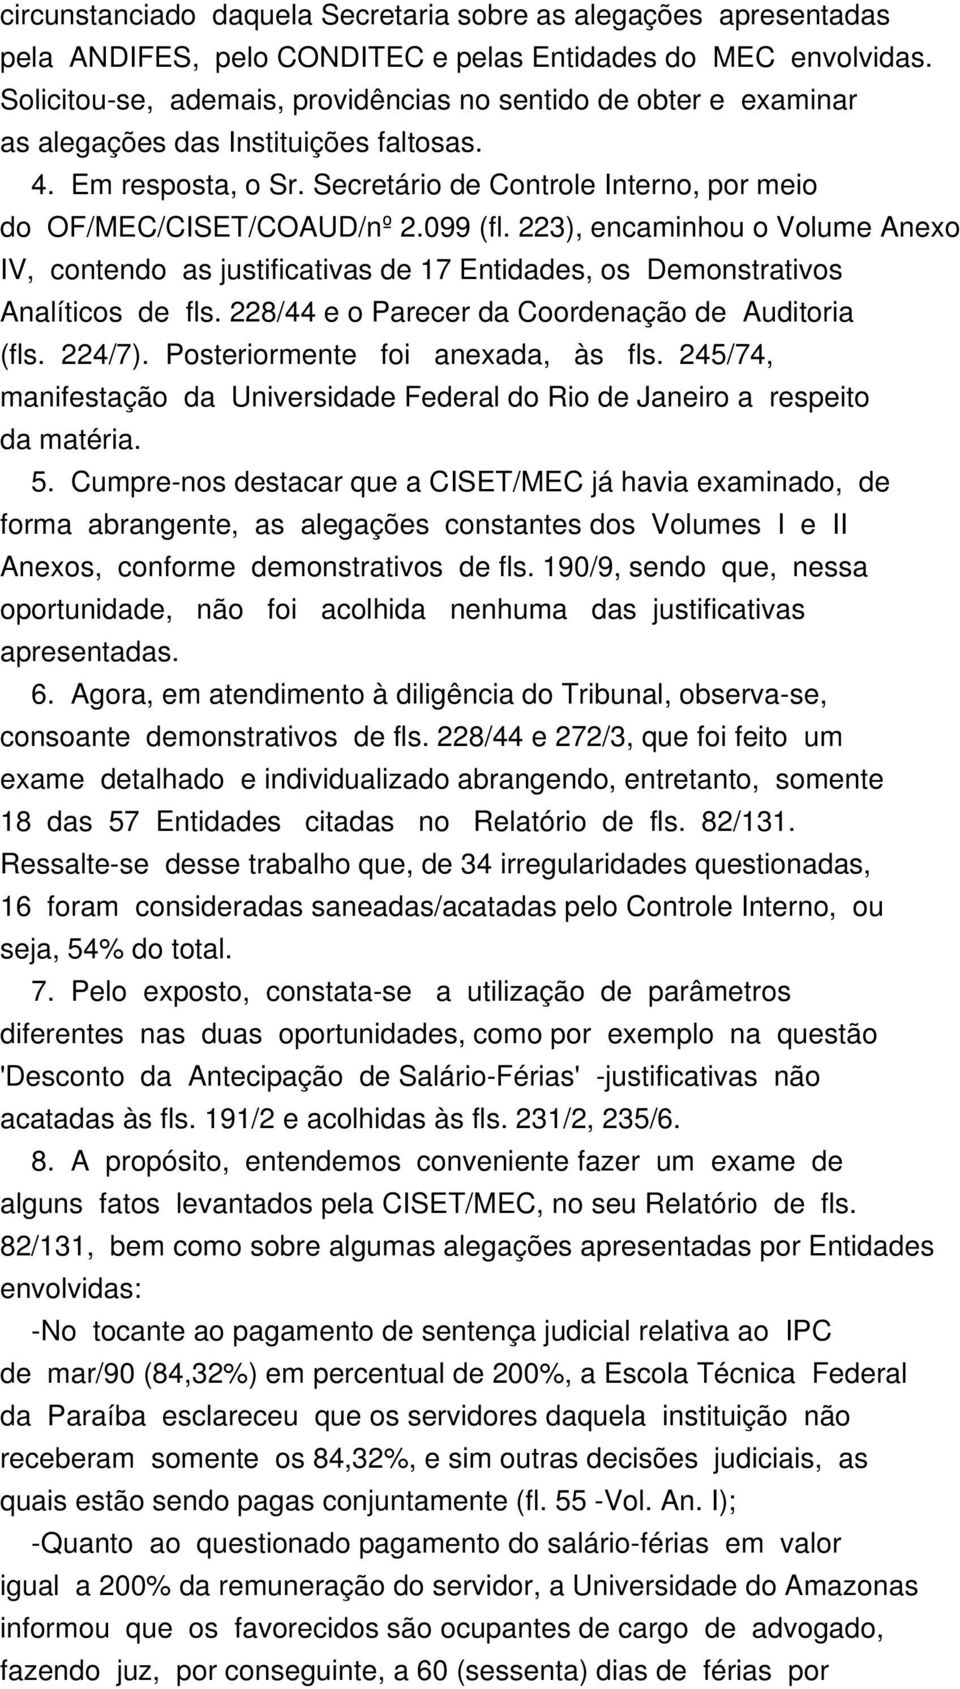 099 (fl. 223), encaminhou o Volume Anexo IV, contendo as justificativas de 17 Entidades, os Demonstrativos Analíticos de fls. 228/44 e o Parecer da Coordenação de Auditoria (fls. 224/7).